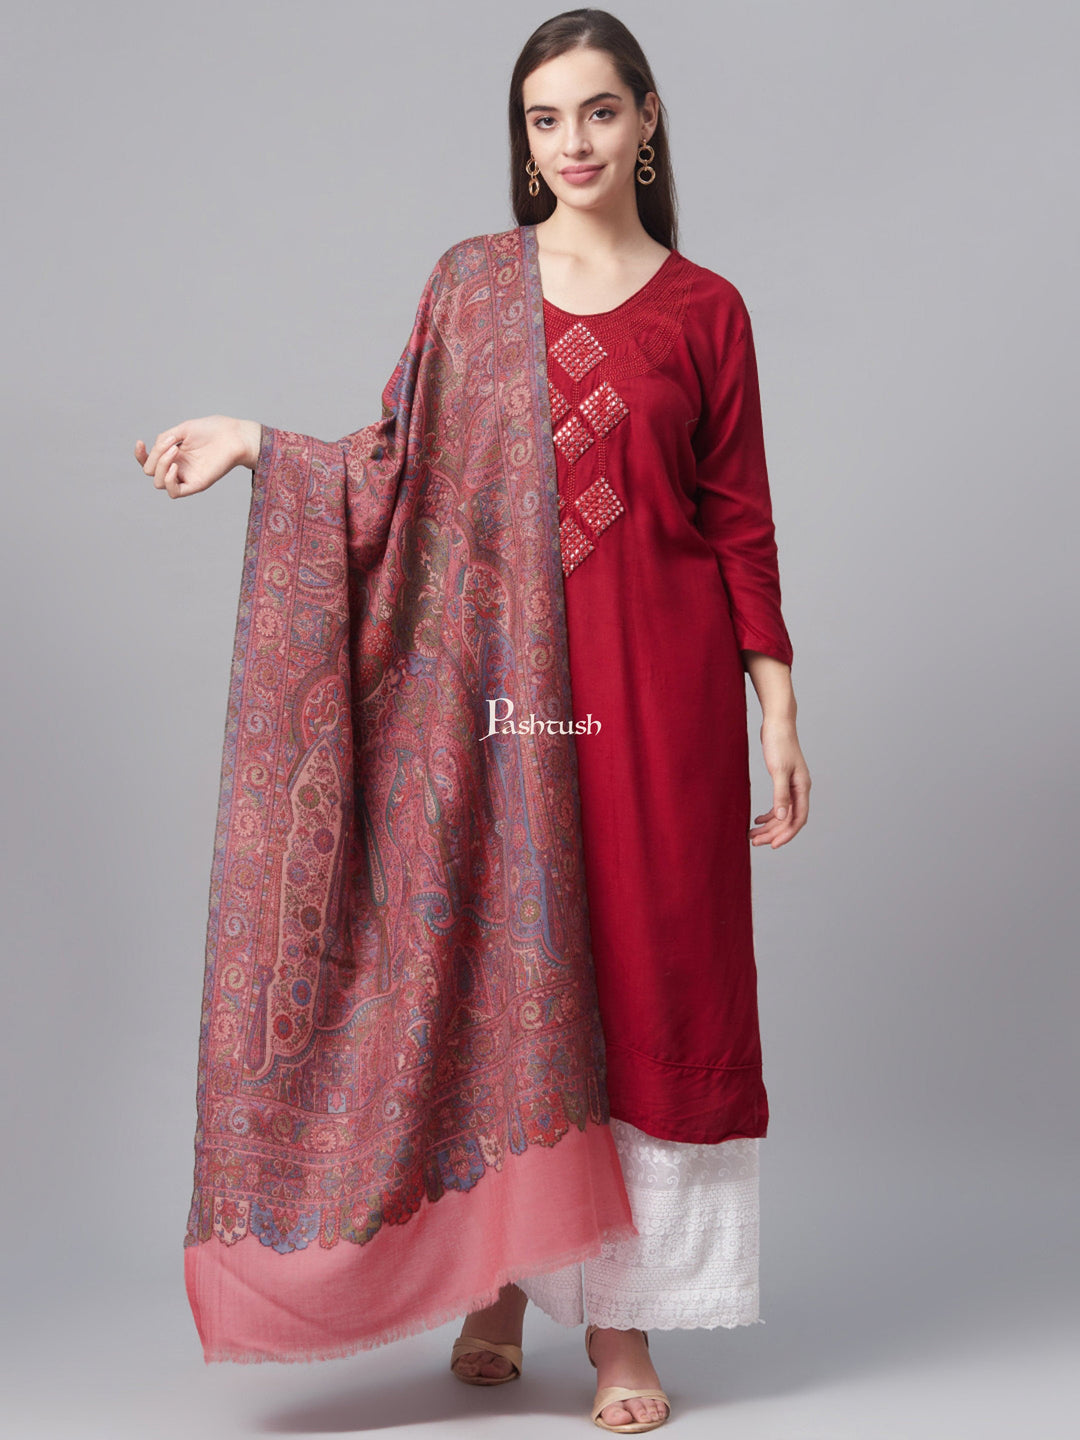 Pashtush India Womens Shawls Pashtush Women 100% Pure Wool Woven Kalamkari Weave Shawl, With Woolmark Certificate